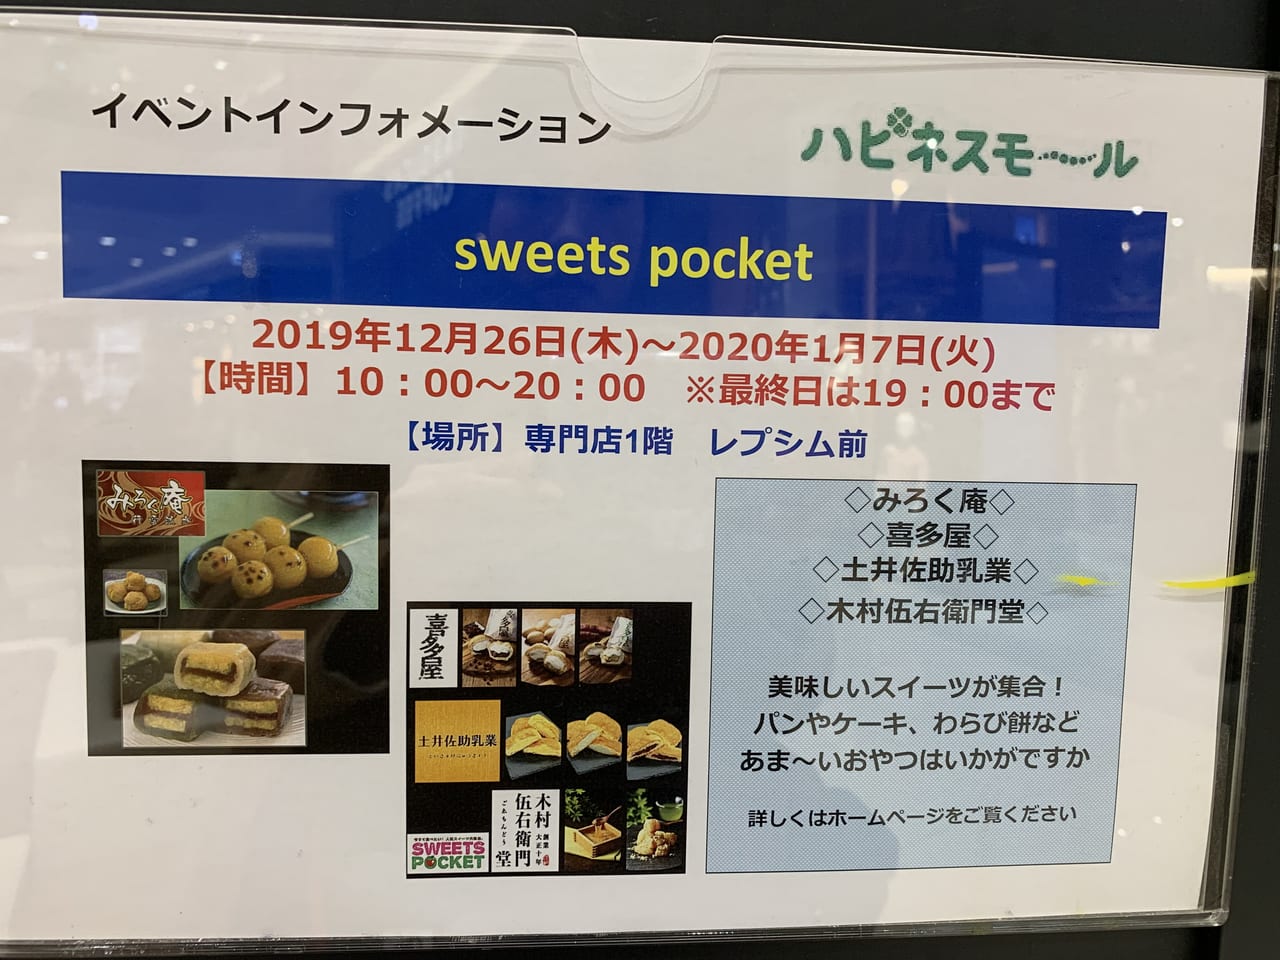 広島市安佐南区 スイーツ好き必見 イオンモール広島祇園店で美味しいスイーツ大集合なイベント Sweets Pocketが開催されています 号外net 広島市安佐南区 安佐北区